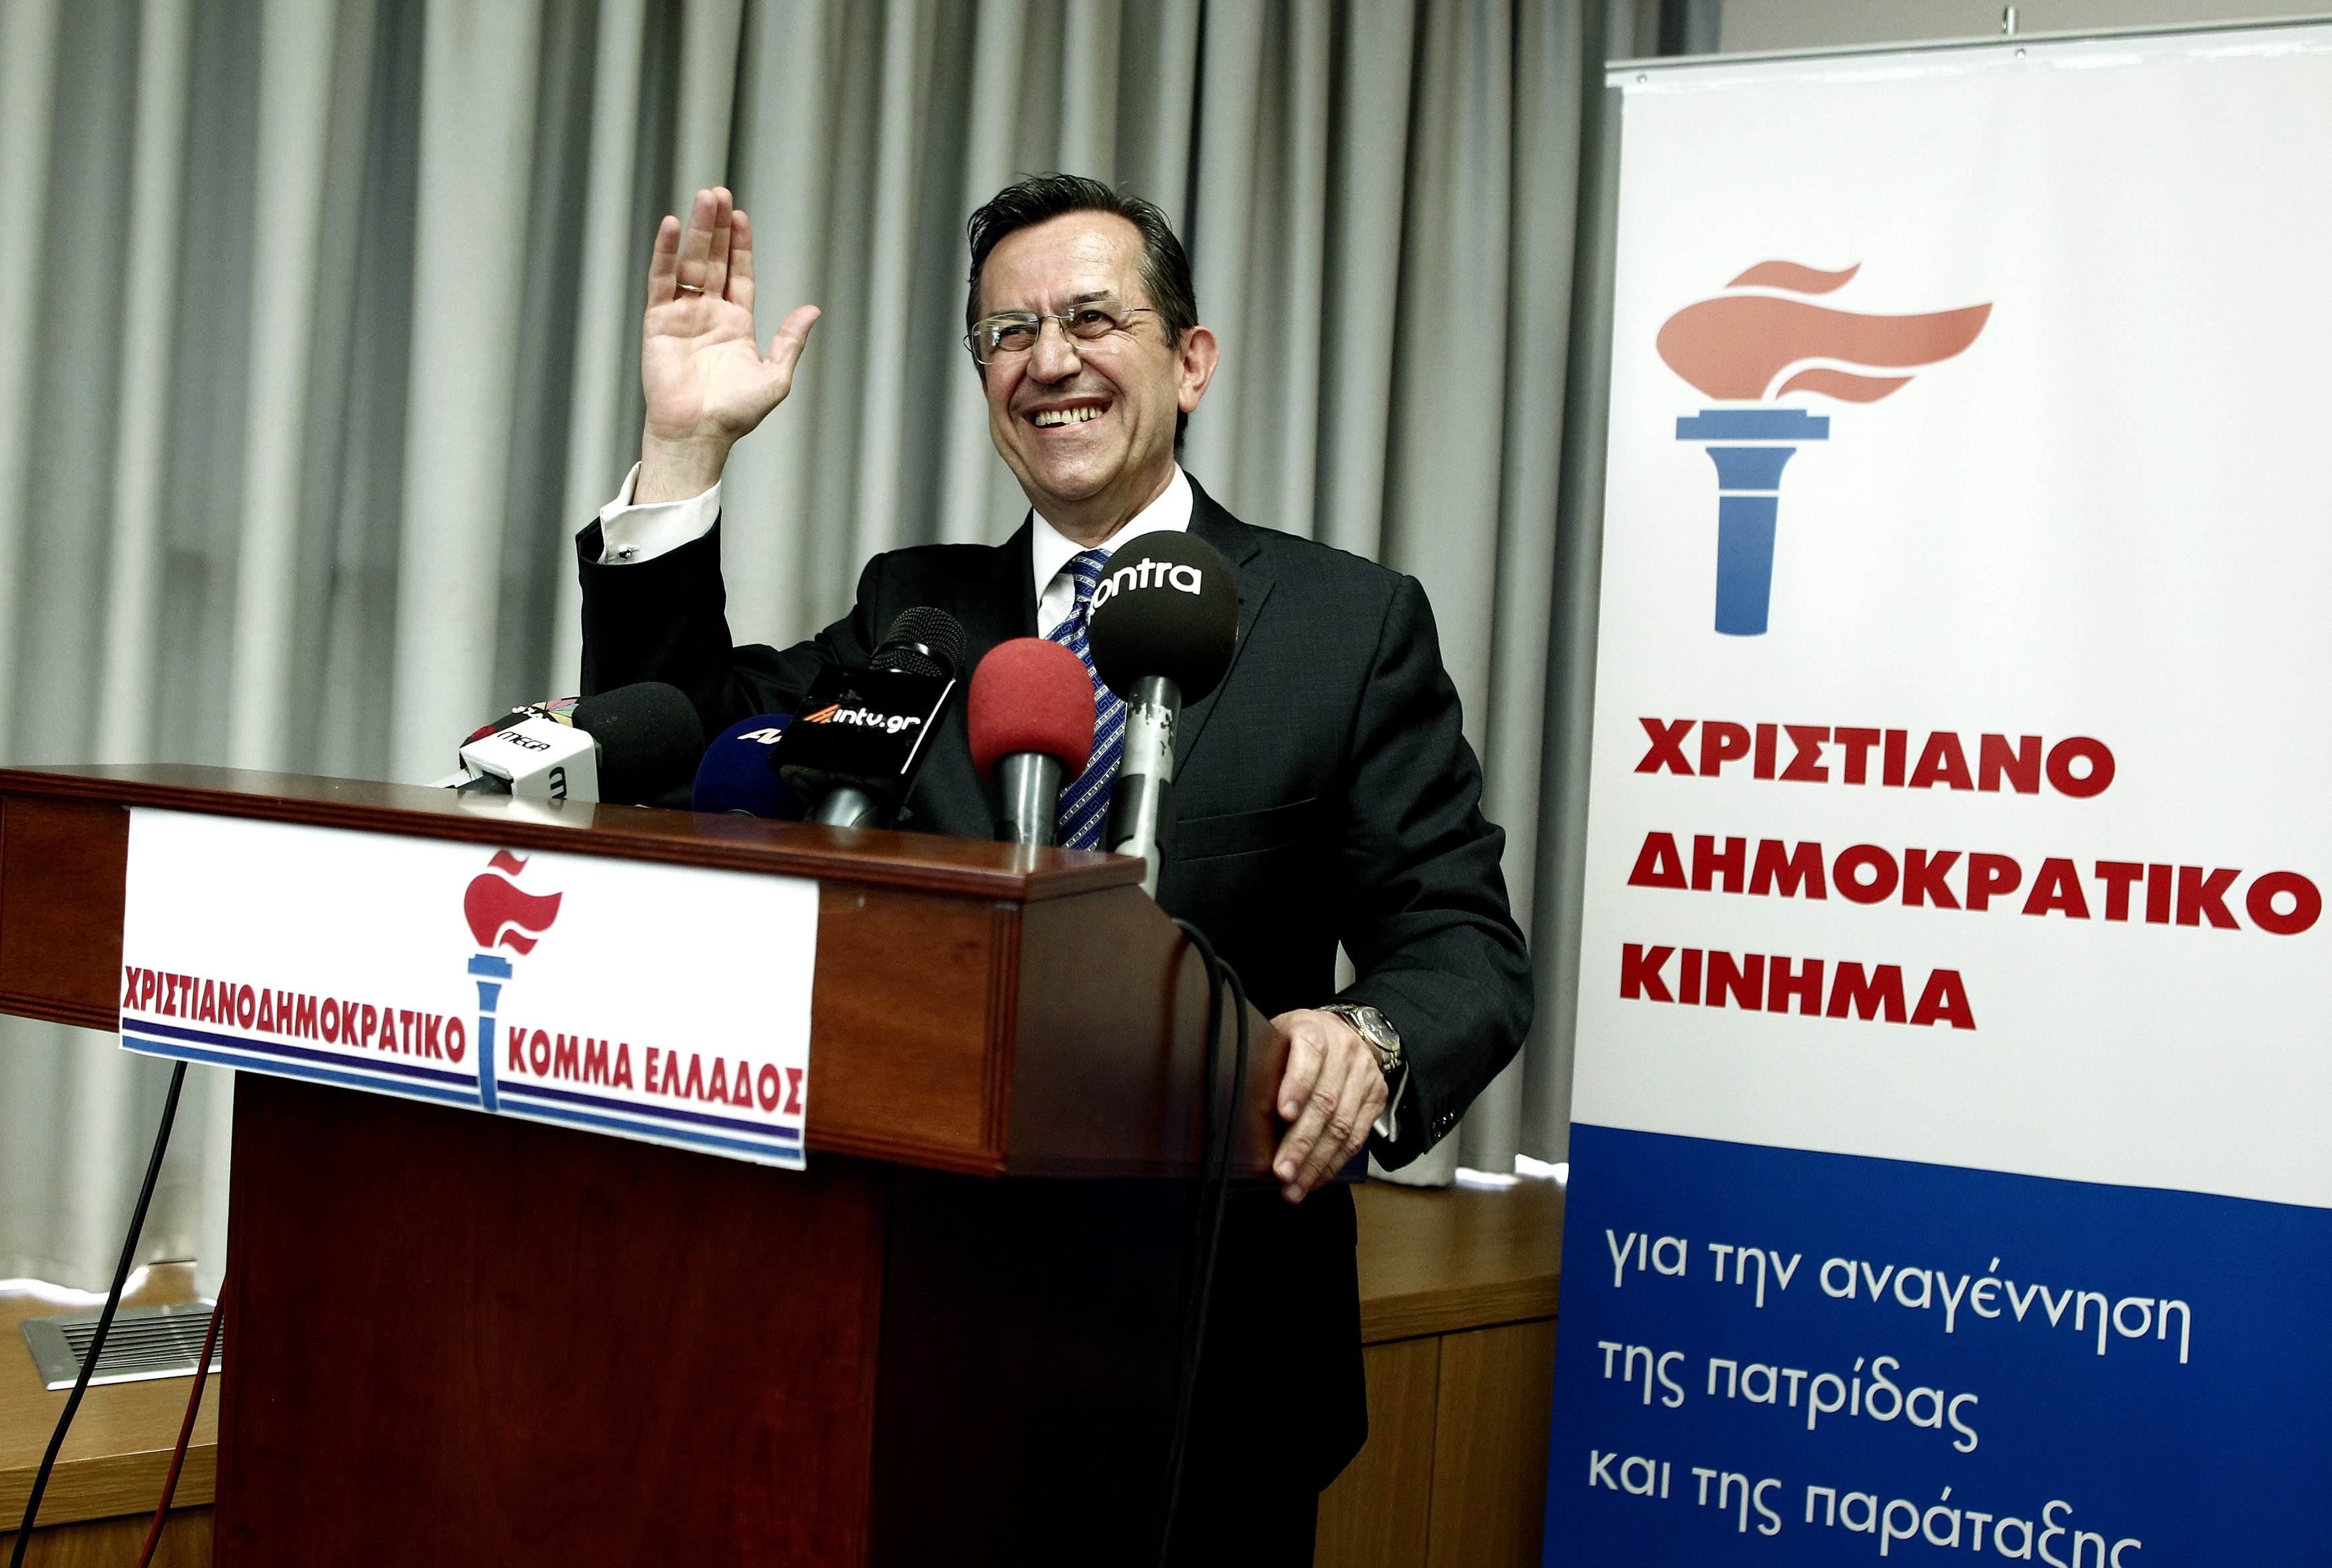 Το Χριστιανοδημοκρατικό Κόμμα Ελλάδος παρουσίασε ο Ν. Νικολόπουλος